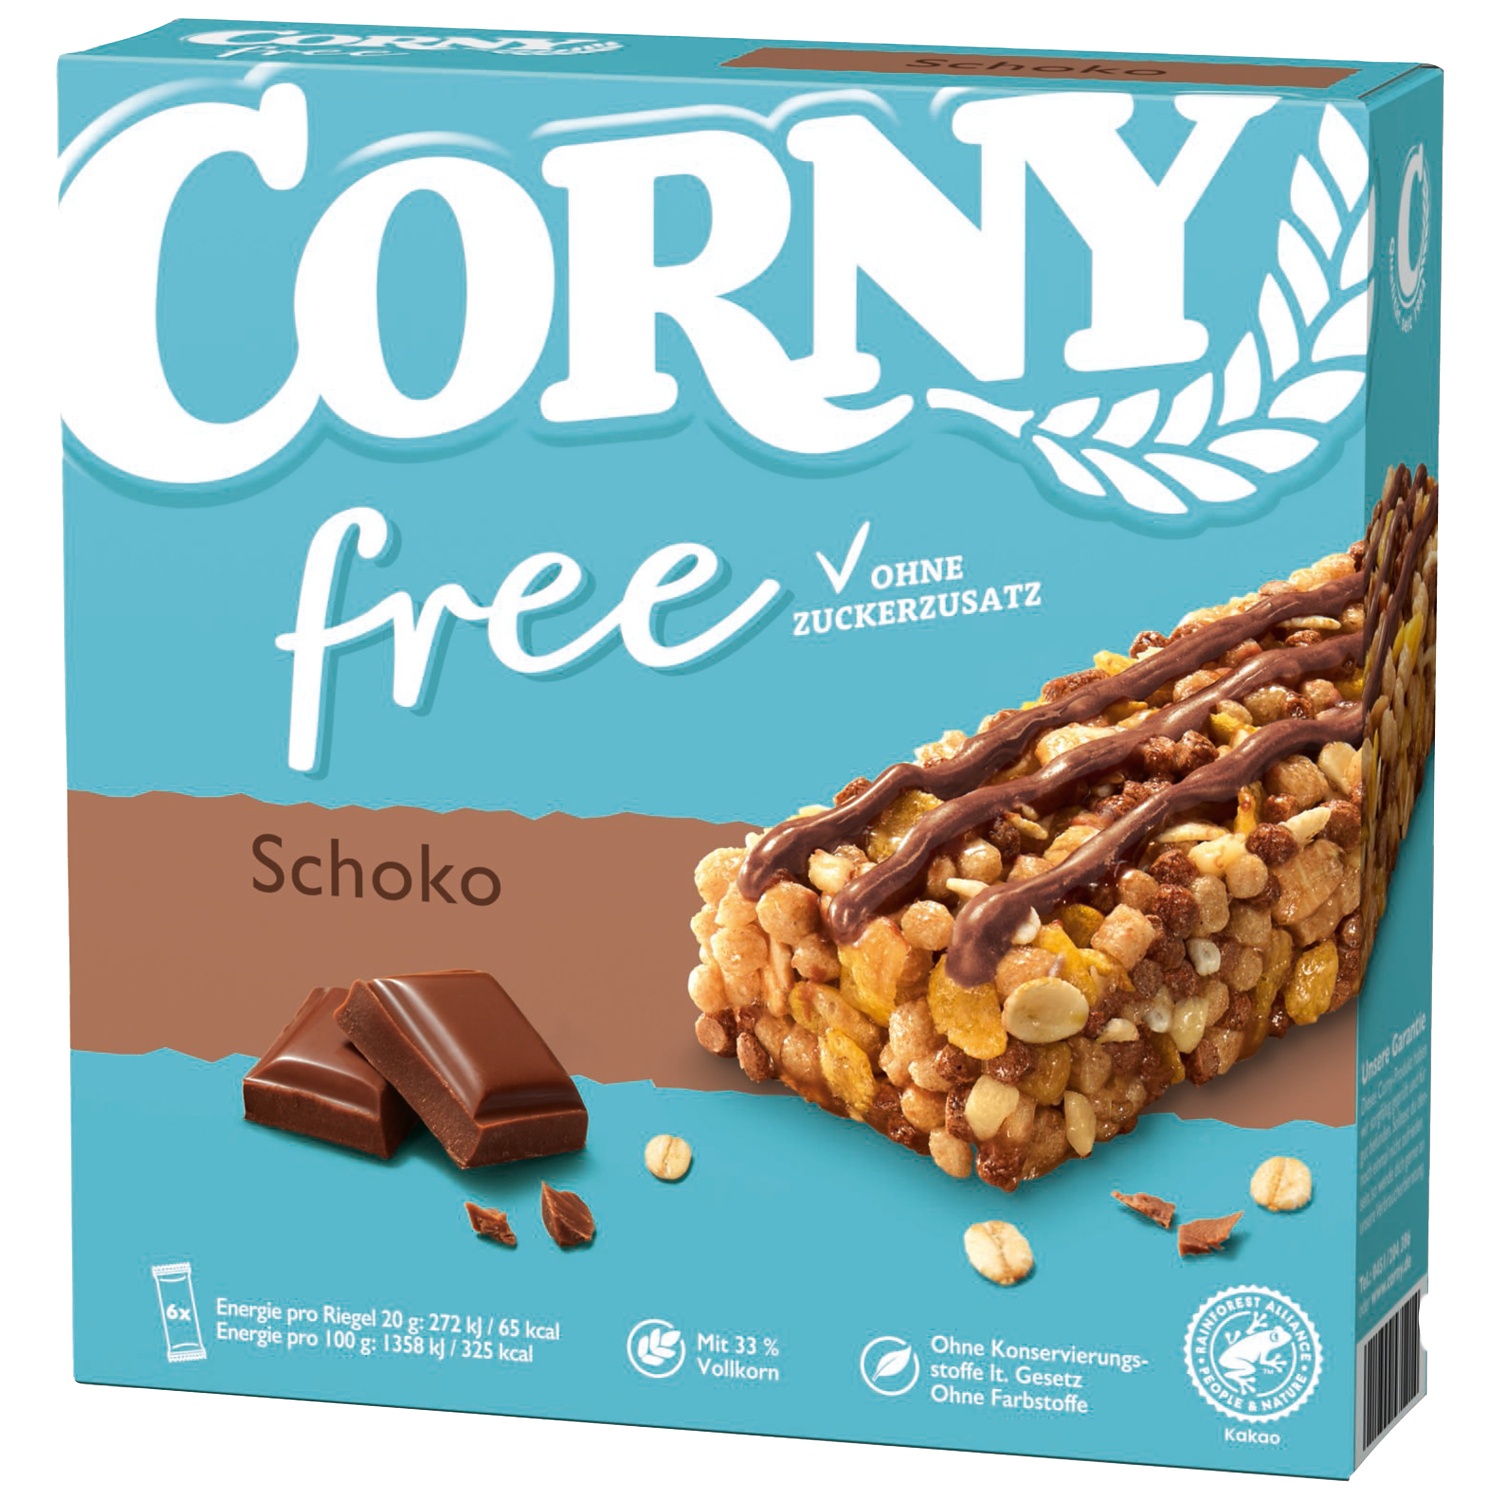 CORNY Barrette di müesli, free cioccolato